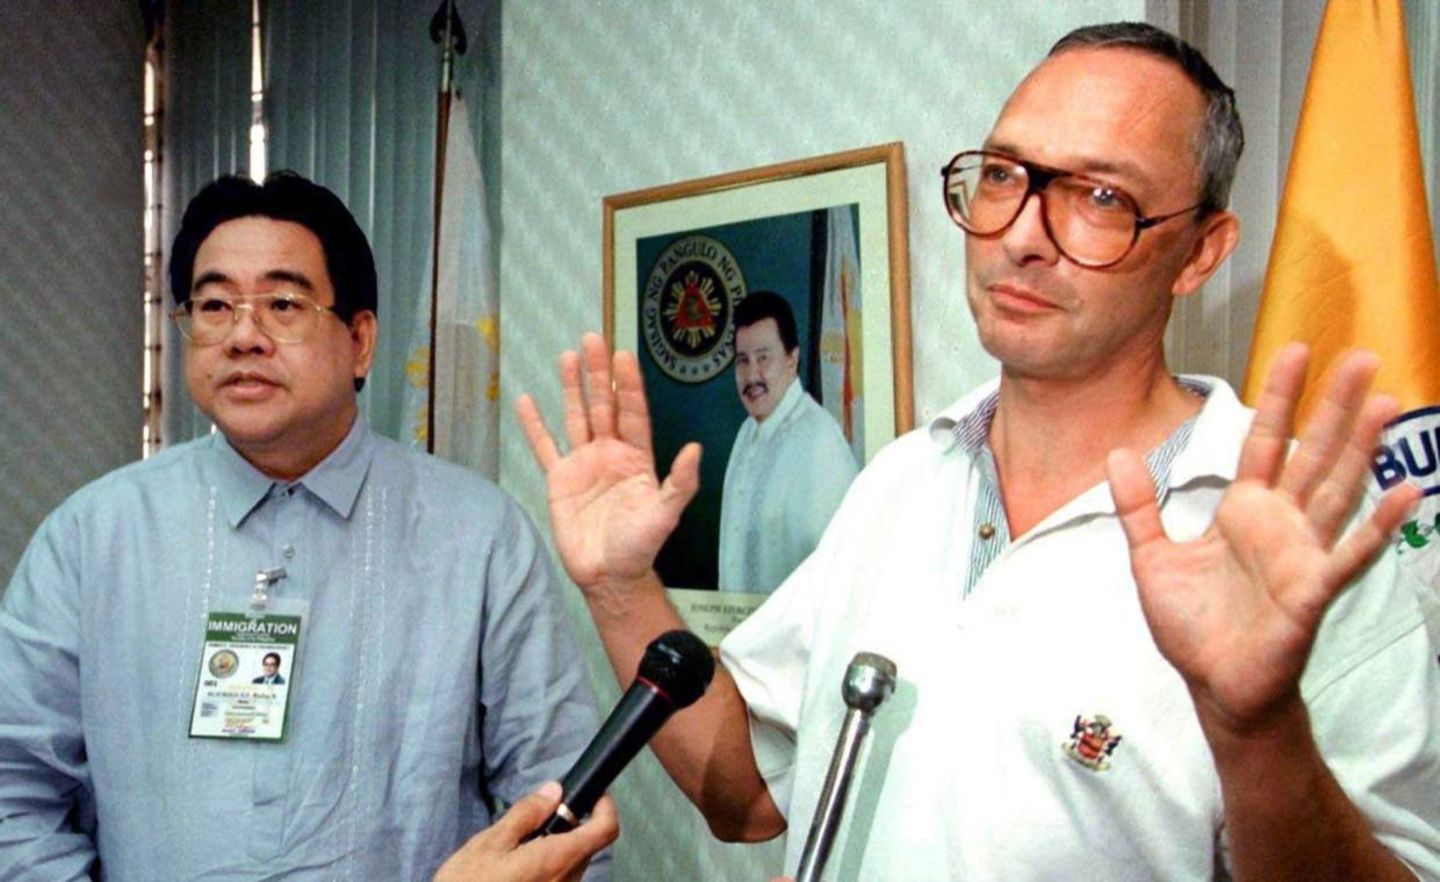 Der ehemalige Balsam-Finanzchef Klaus Schlienkamp (r.) macht eine abwehrende Geste zu den Journalisten, als er Ende März 2000 bei einer Pressekonferenz in Manila erscheint. Kurze Zeit später wurde Schlienkamp nach Deutschland abgeschoben.